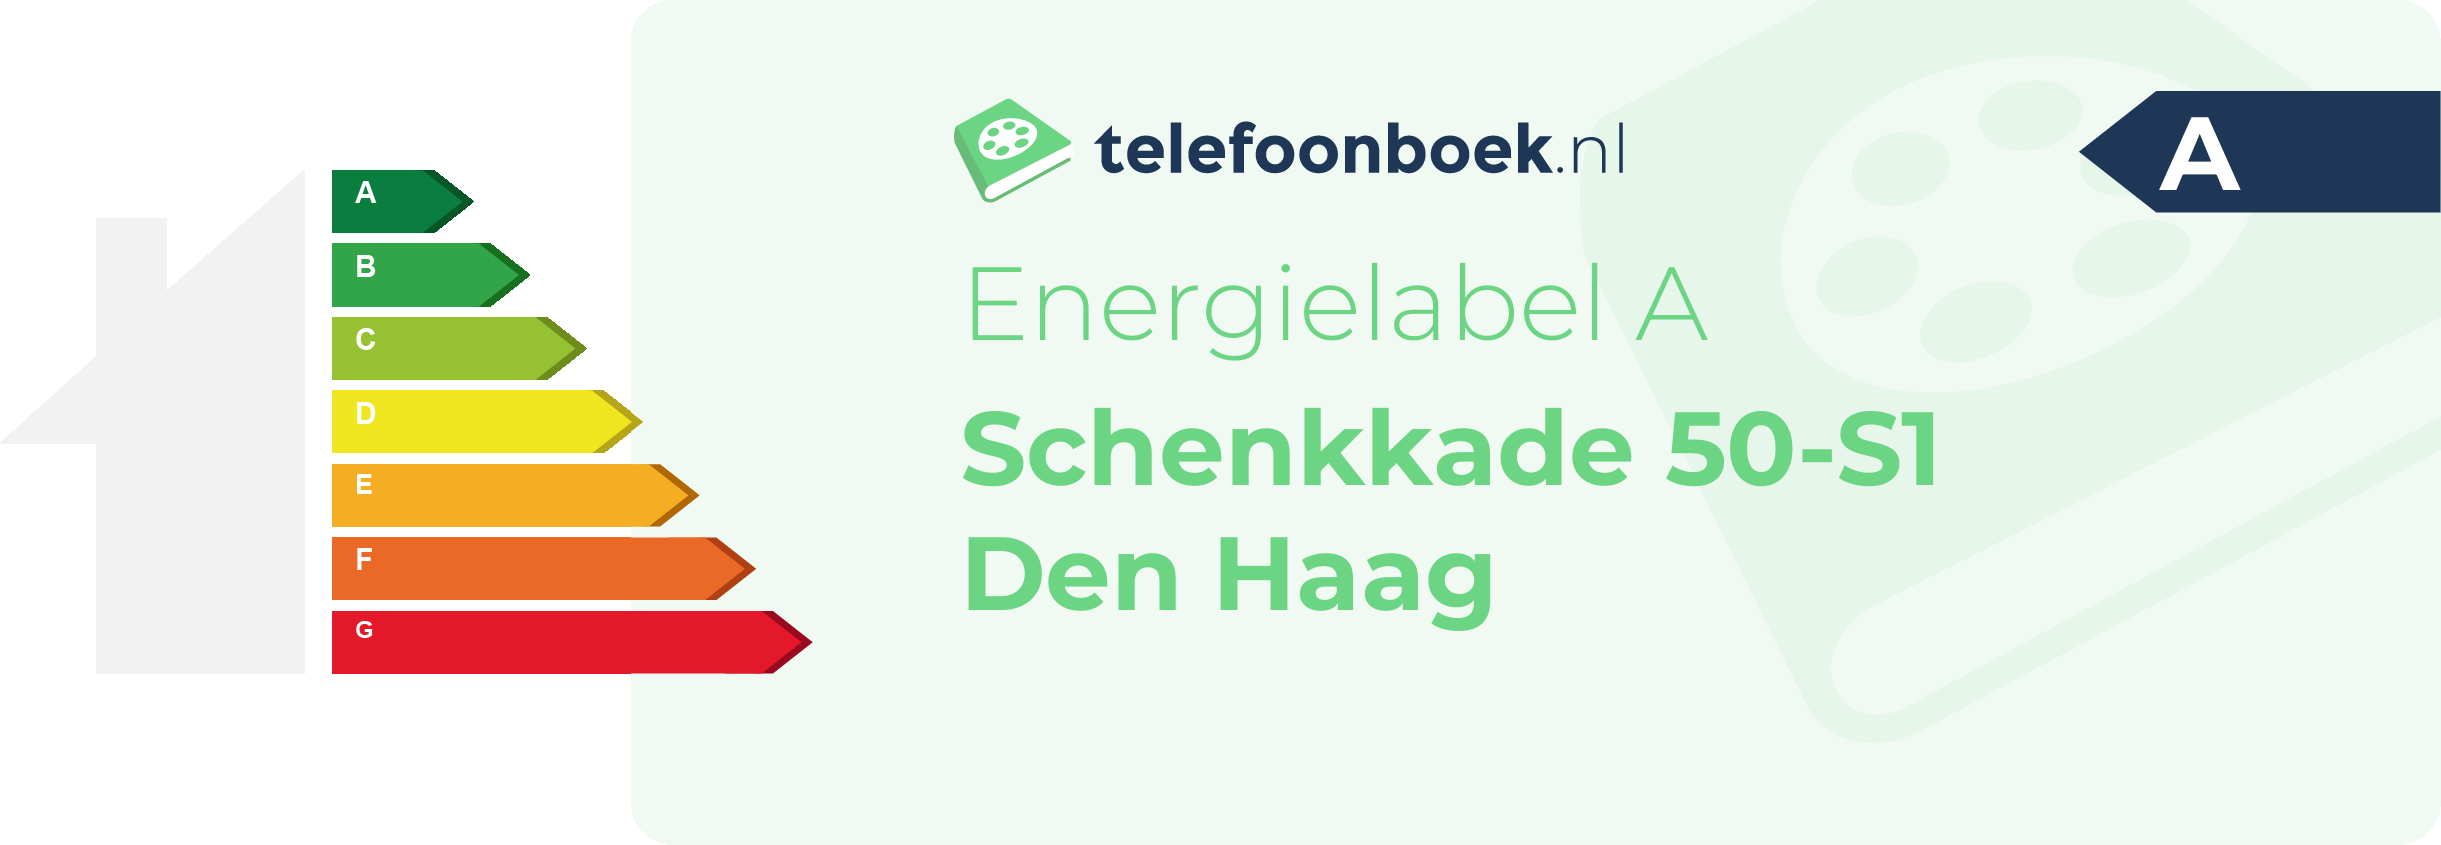 Energielabel Schenkkade 50-S1 Den Haag